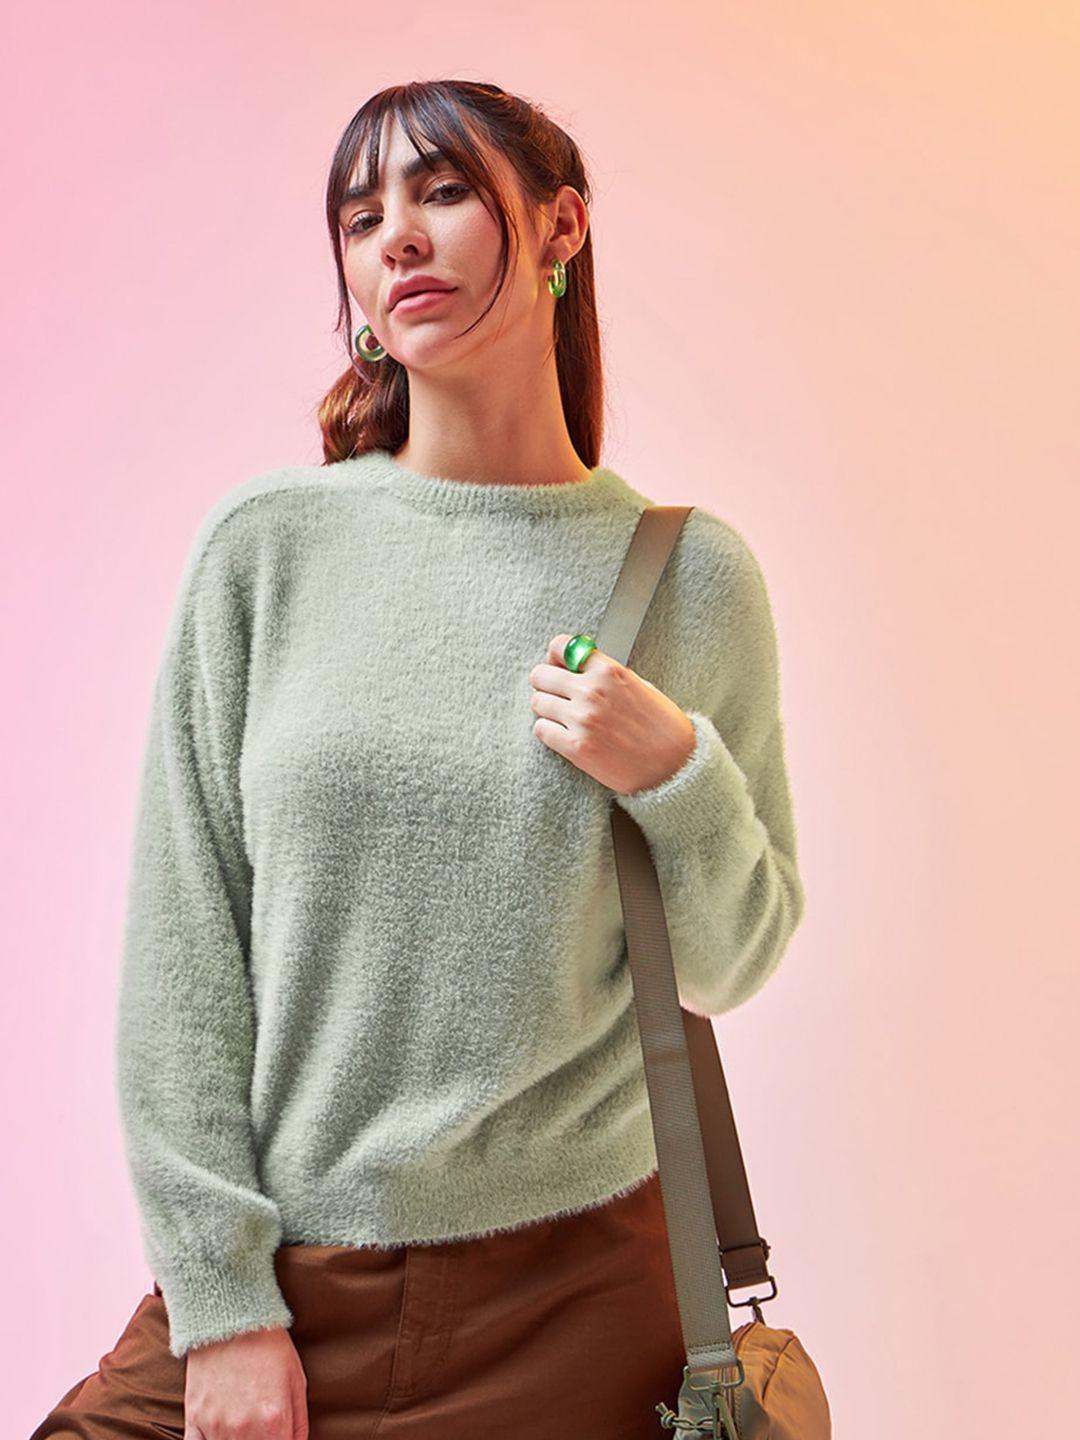 bewakoof-green-round-neck-pullover-sweater